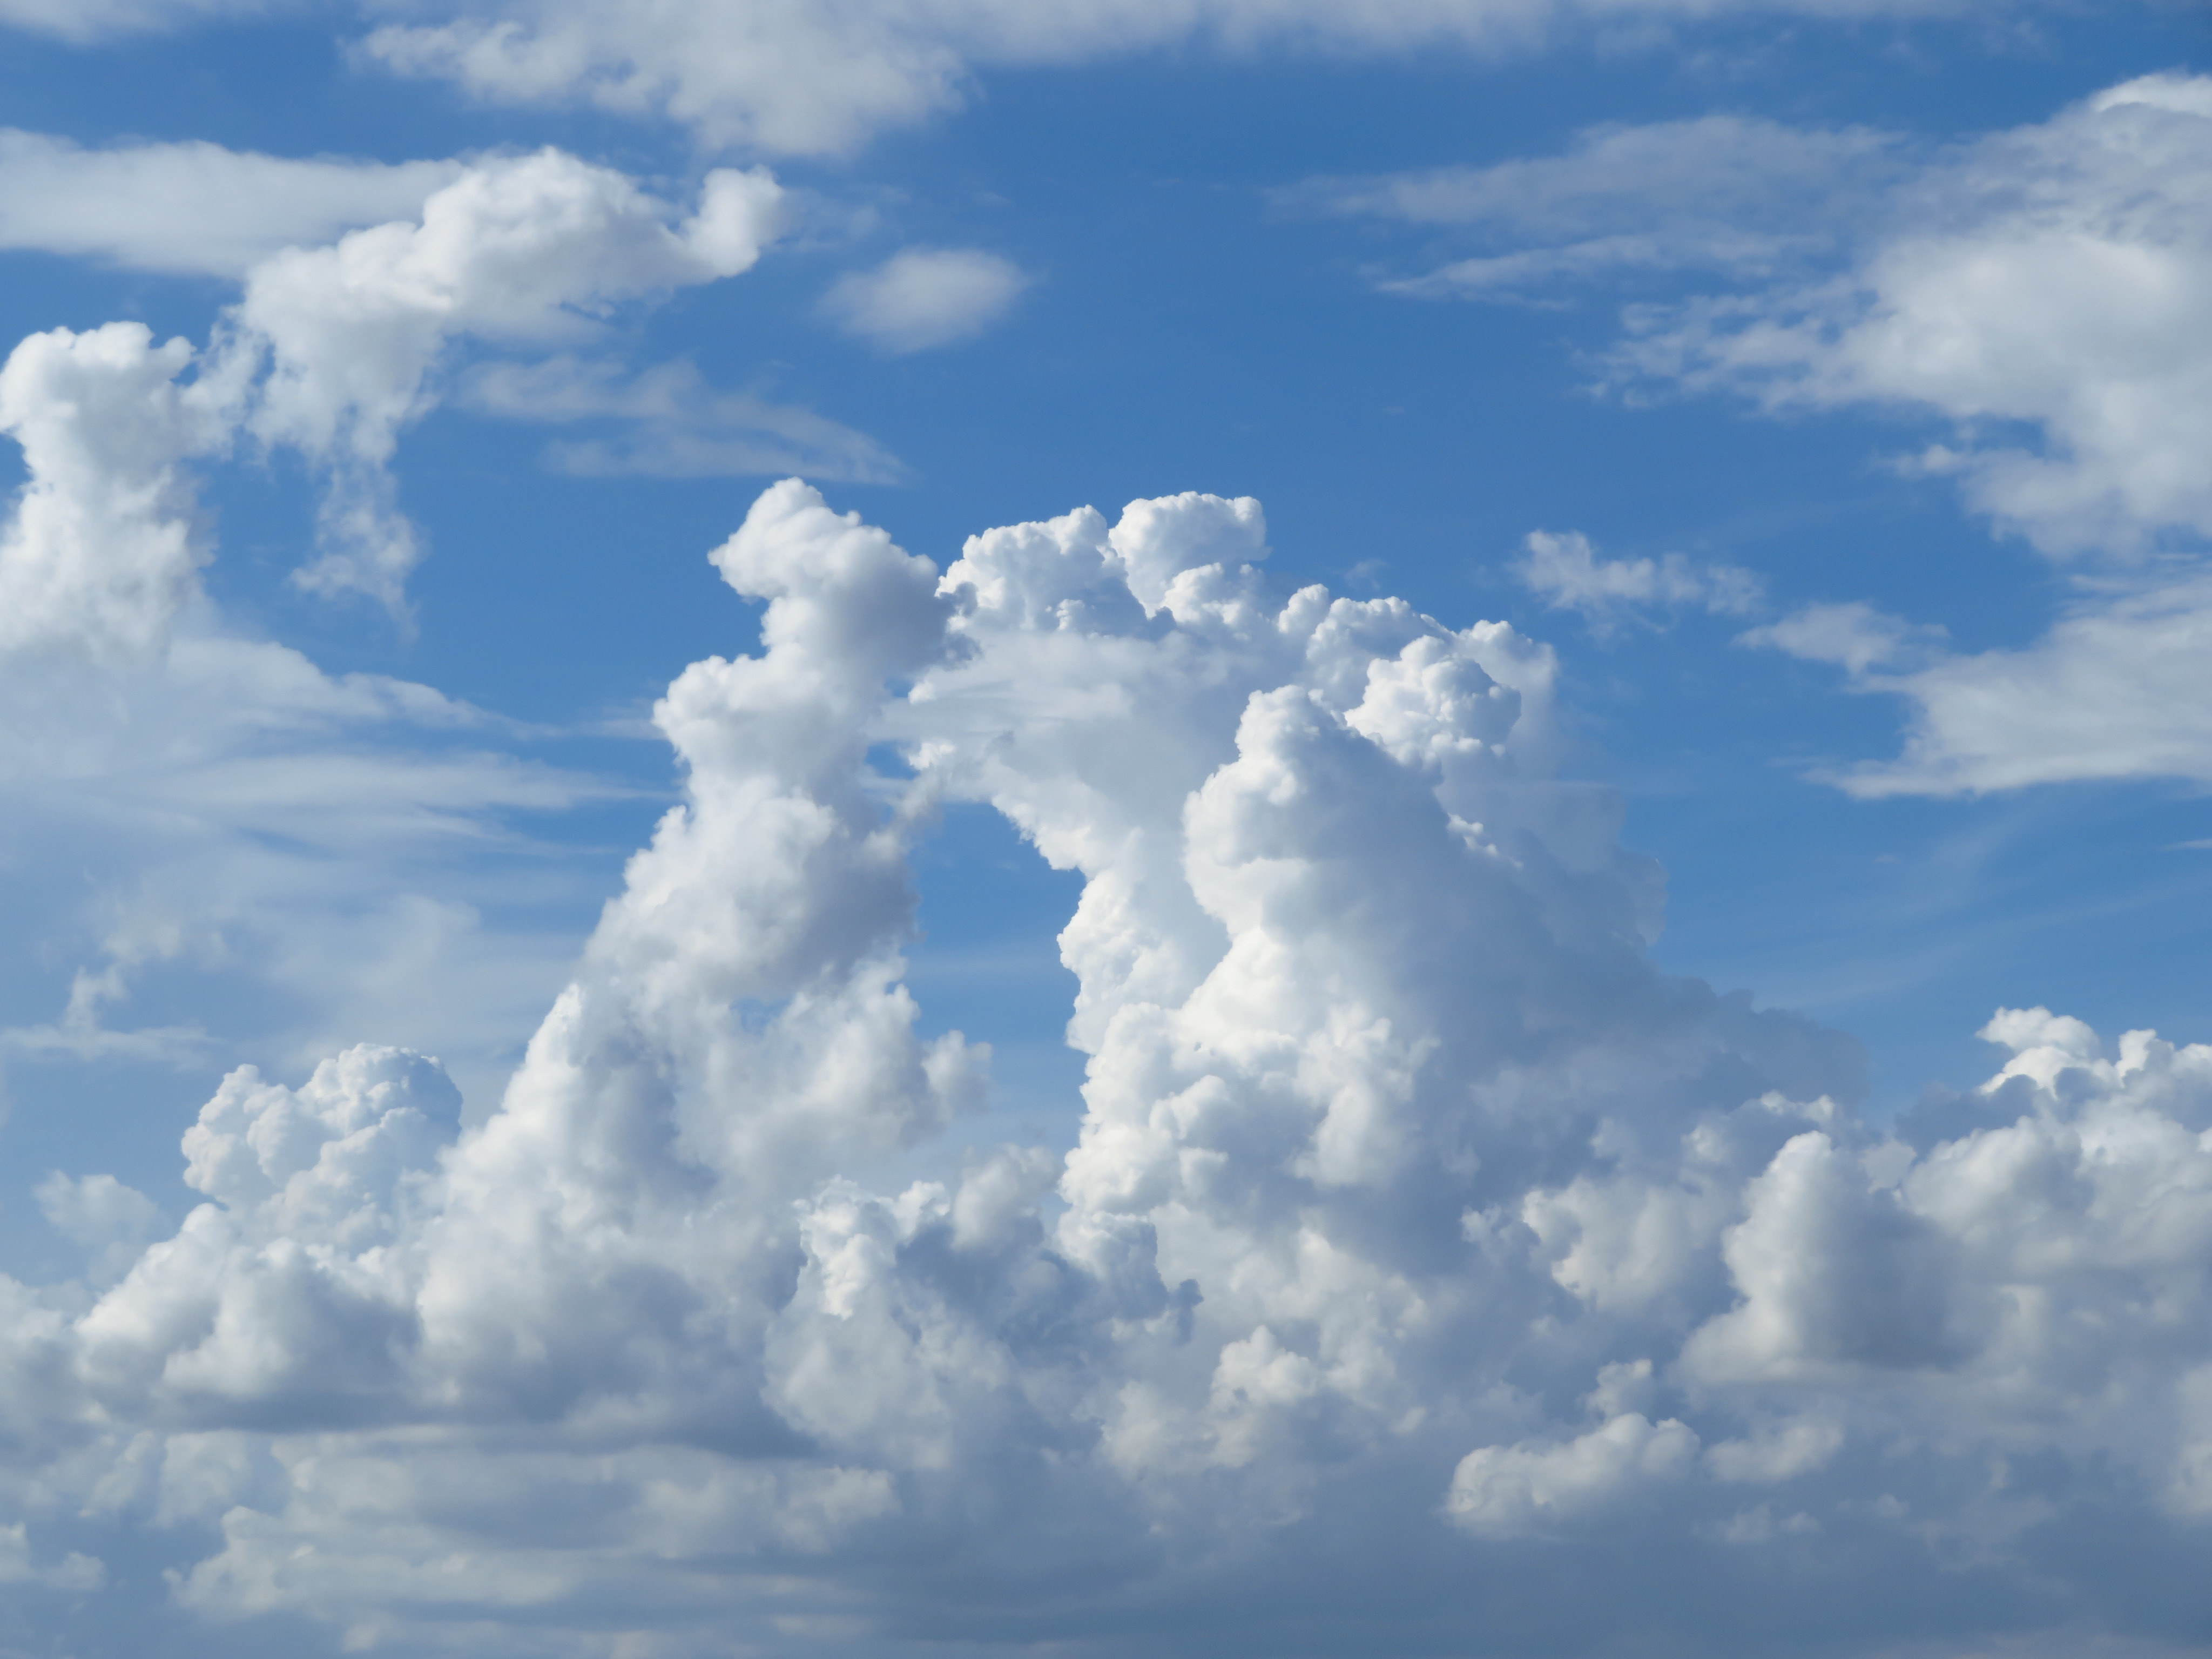 تويتر 荒木健太郎 على تويتر 雲友のみなさまへ Web会議などで使える雲壁紙100枚をご用意しました 後光がさして神々しい感じになったり 雲の上の人感が溢れる雰囲気になるものなど 色々あります ぜひお気に入りの雲や空を見つけてご活用ください みなさまが